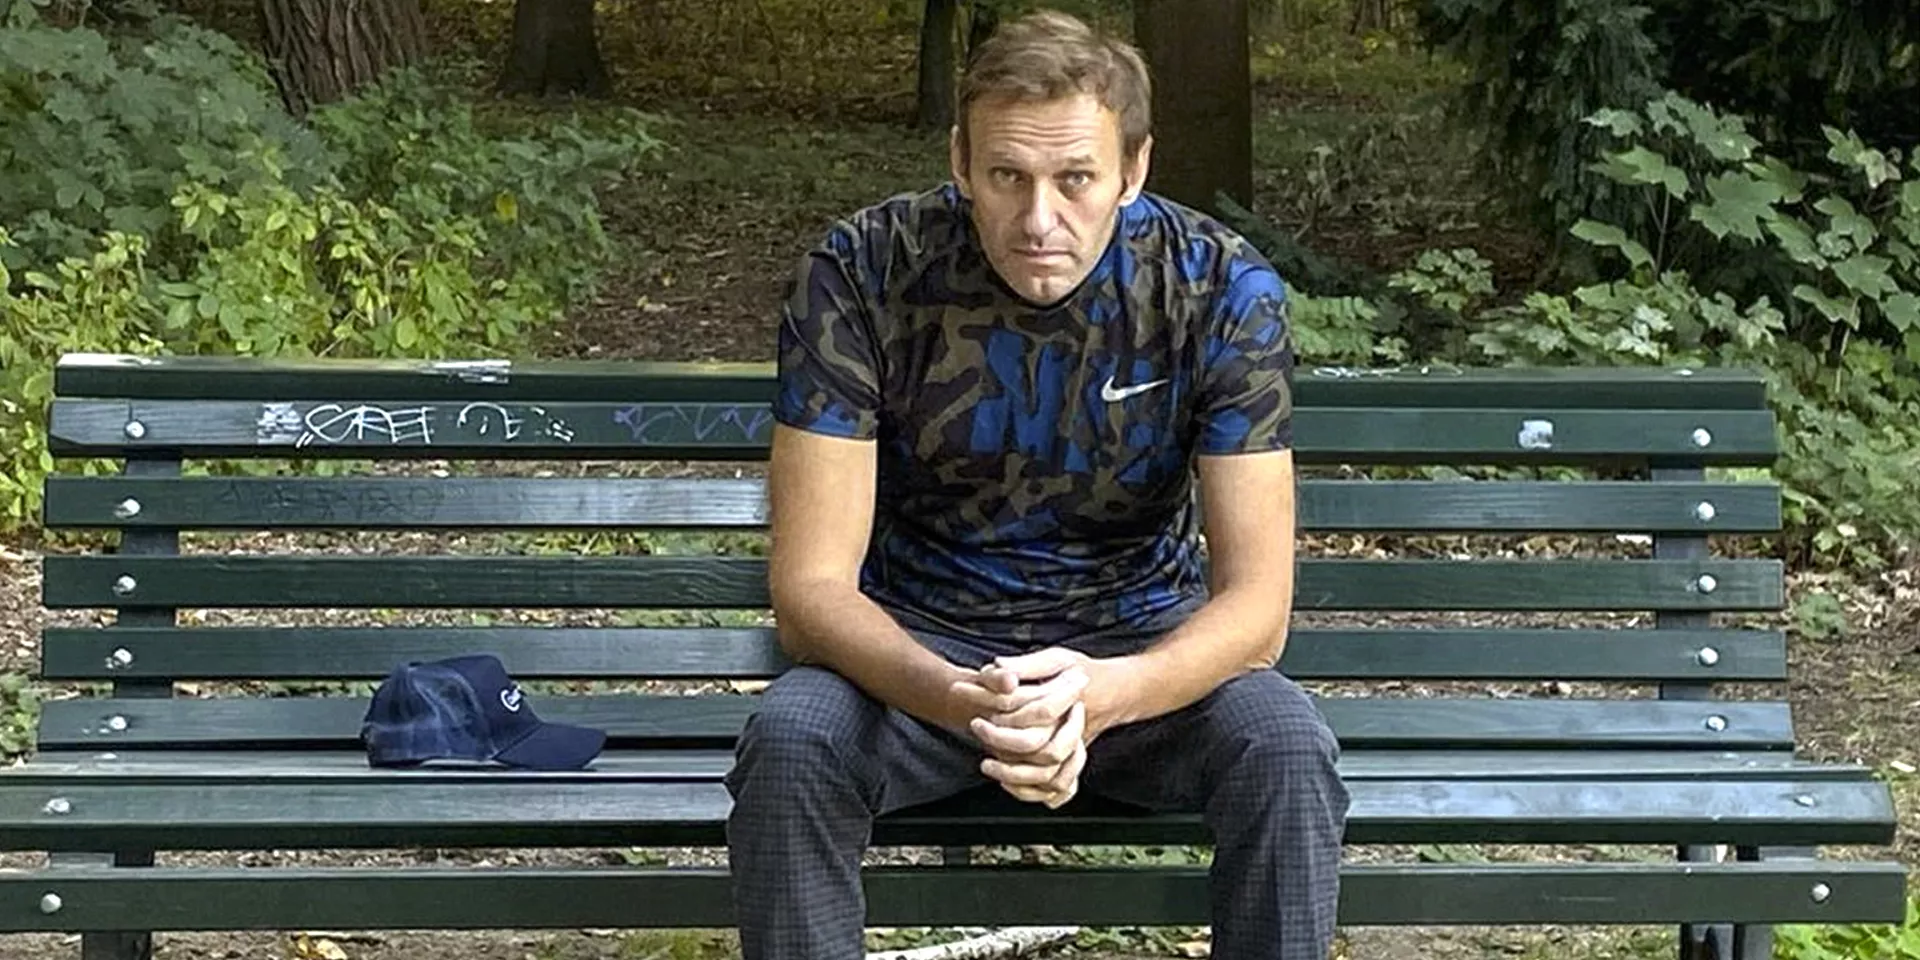 Секретный яд: отравление Навального и единственное в России дело об убийстве «Новичком»